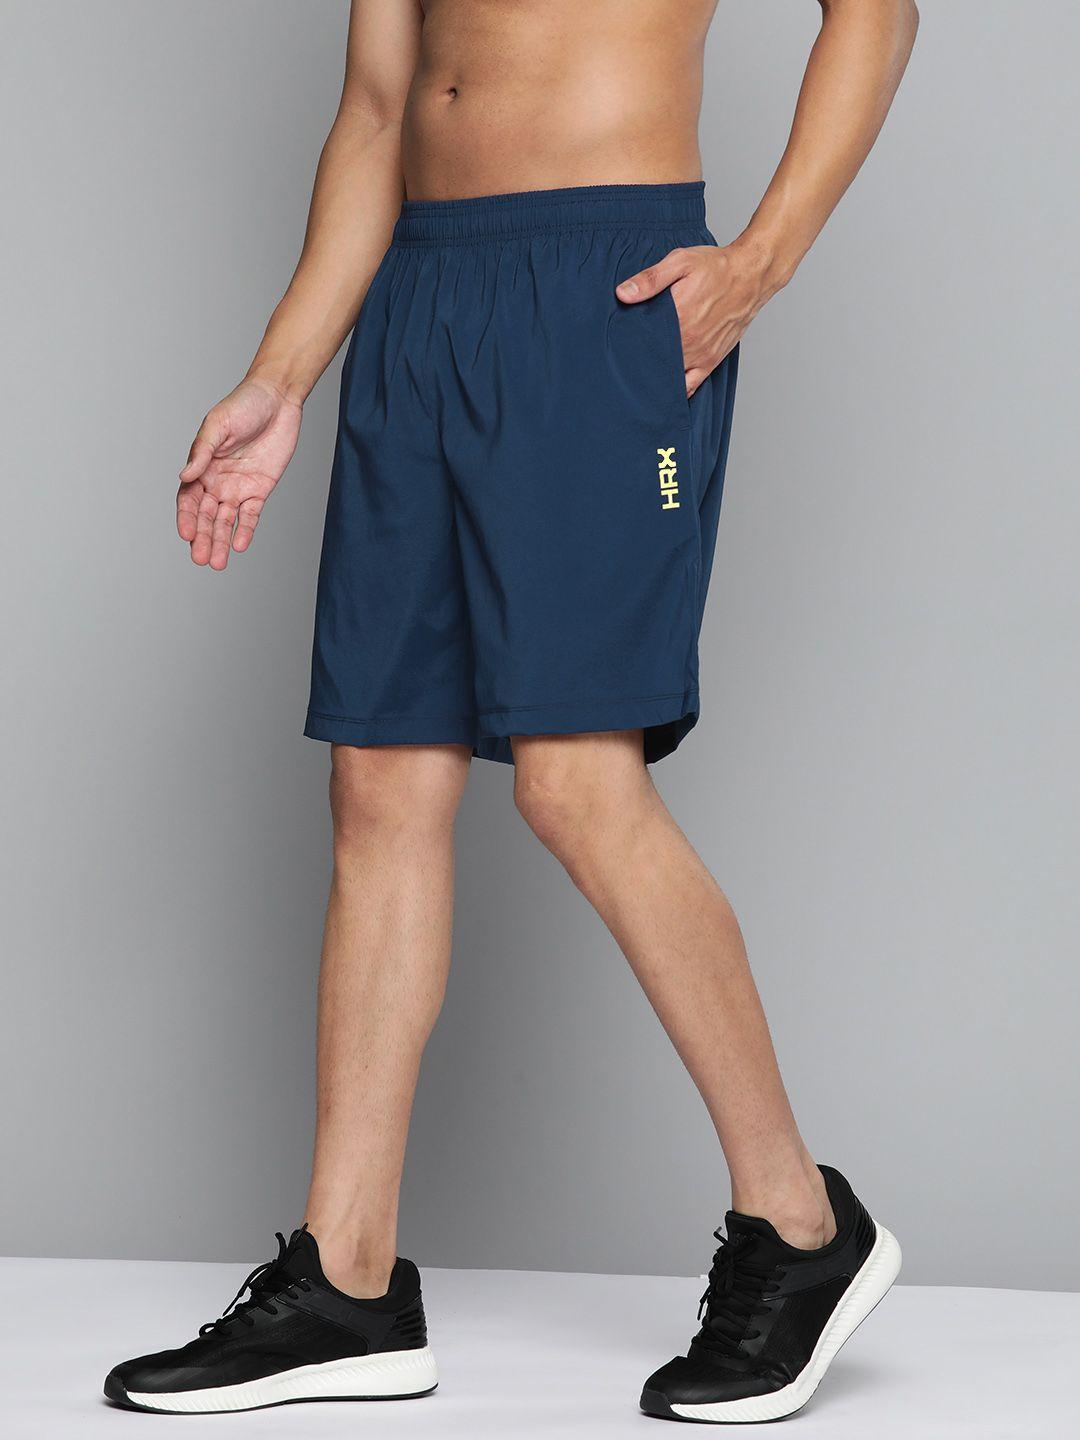 hrx by hrithik roshan training men rapid-dry brand carrier shorts